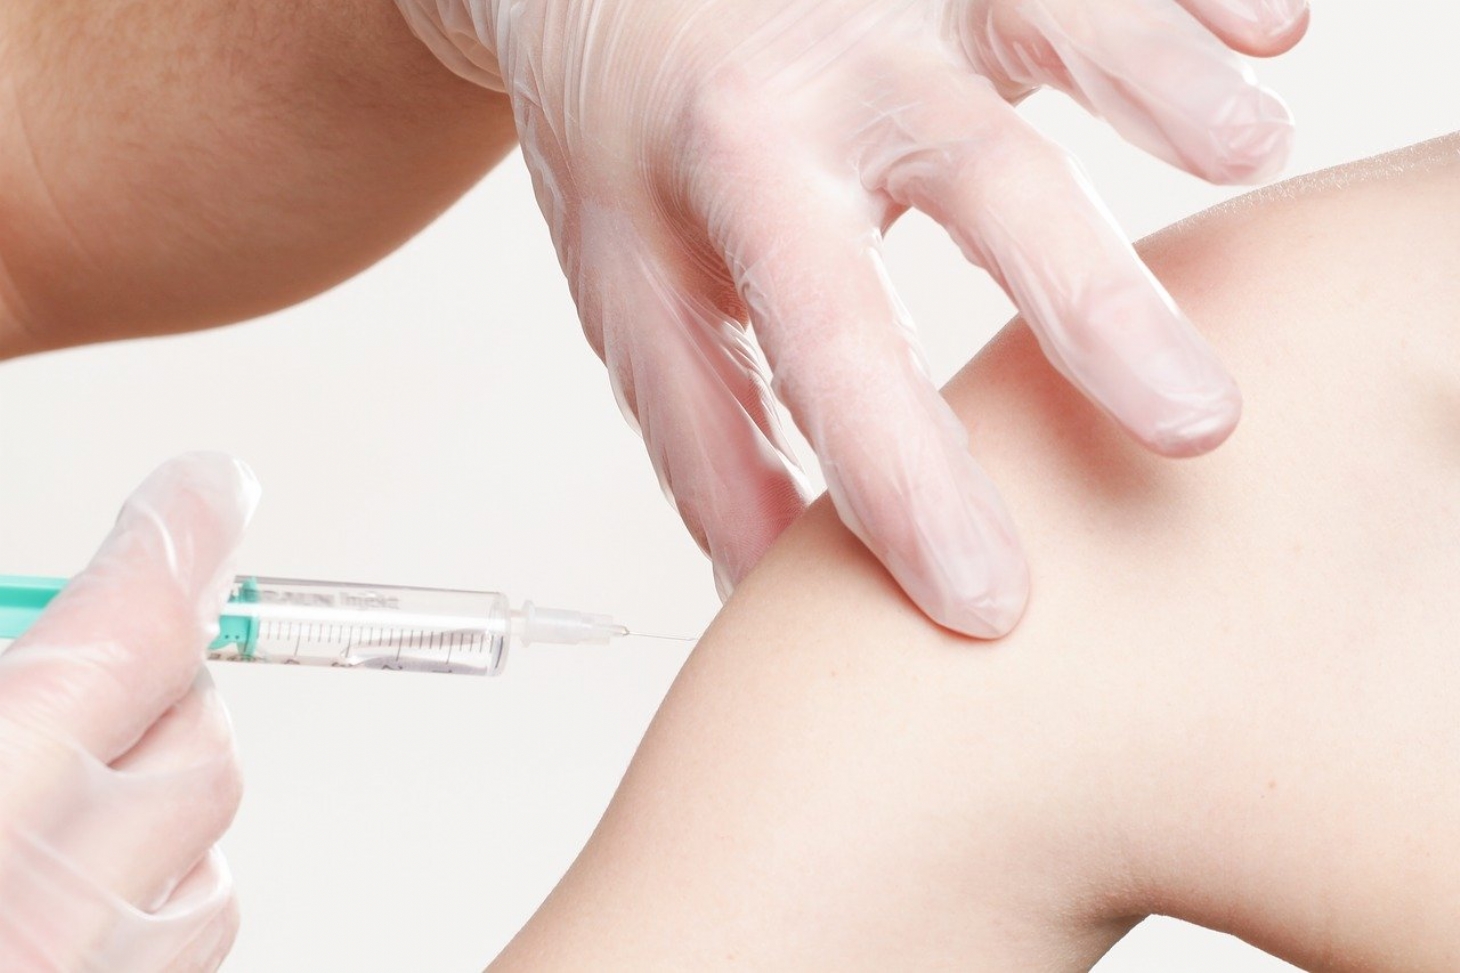 Dia D terá imunização contra o sarampo e outras vacinas em Santos | Jornal da Orla